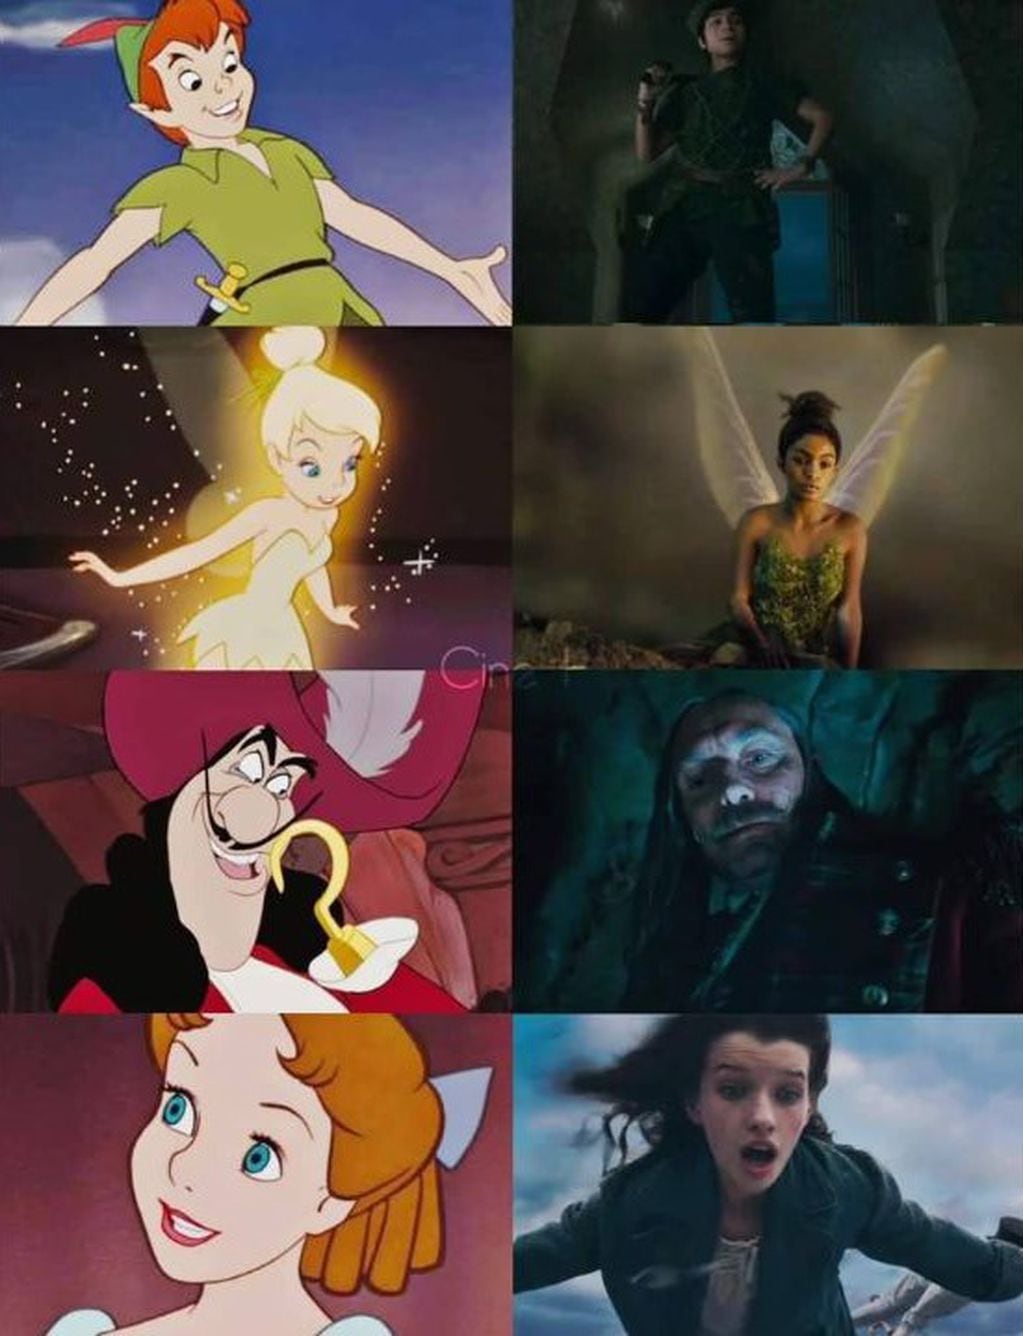 ¿Quién es quien en “Peter Pan & Wendy”?